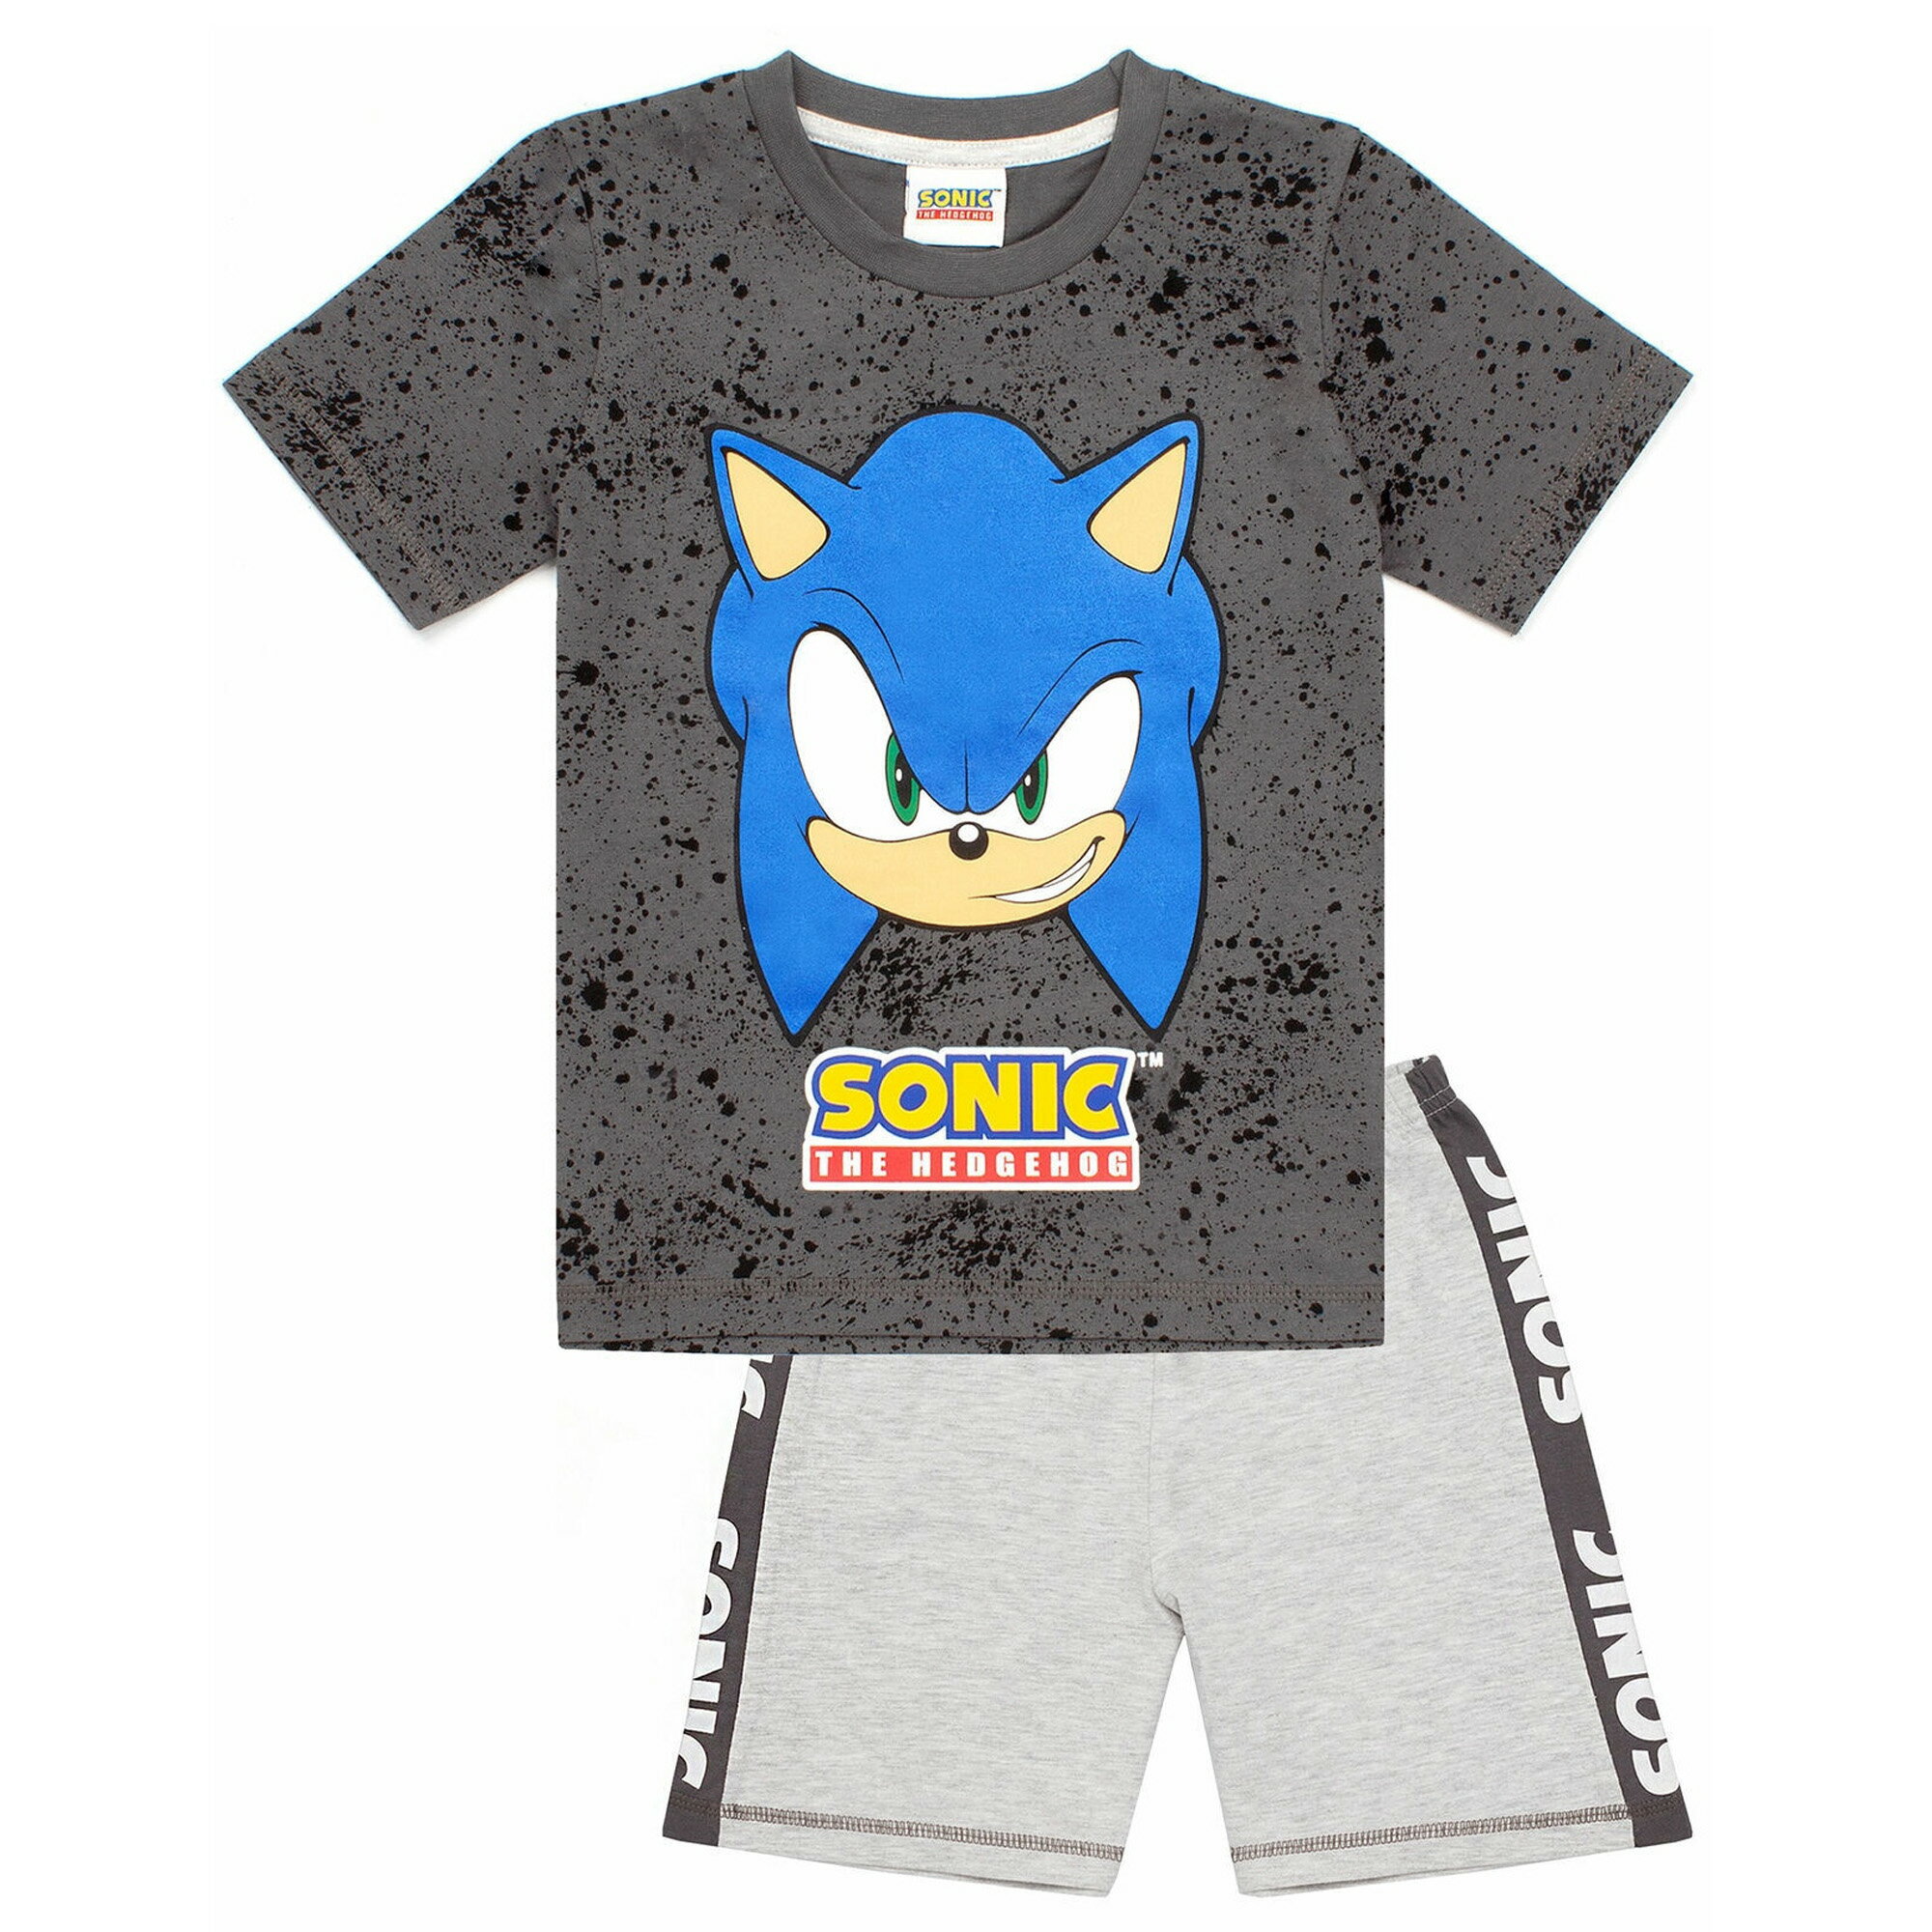 ソニック・ザ・ヘッジホッグ Sonic The Hedgehog オフィシャル商品 キッズ・子供 ボーイズ ゲーミング パジャマ 半袖 半ズボン 上下セット 【海外通販】